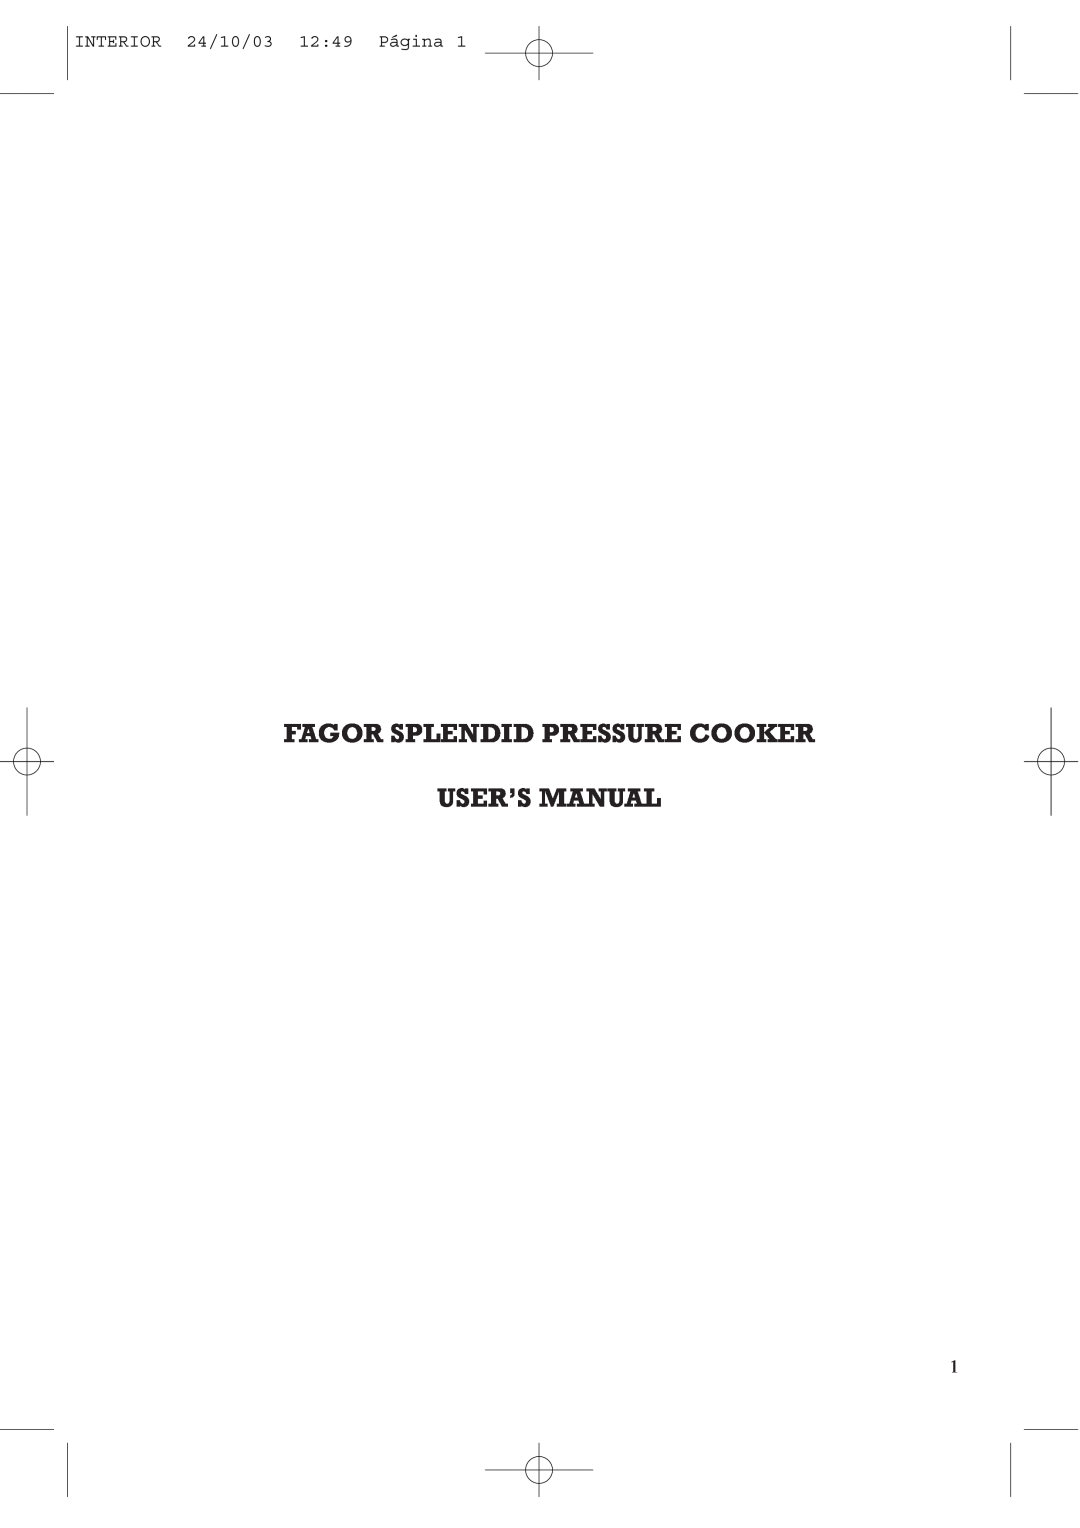 Fagor America FAGOR SPLENDID PRESSURE COOKER user manual INTERIOR 24/10/03 12 49 Página 